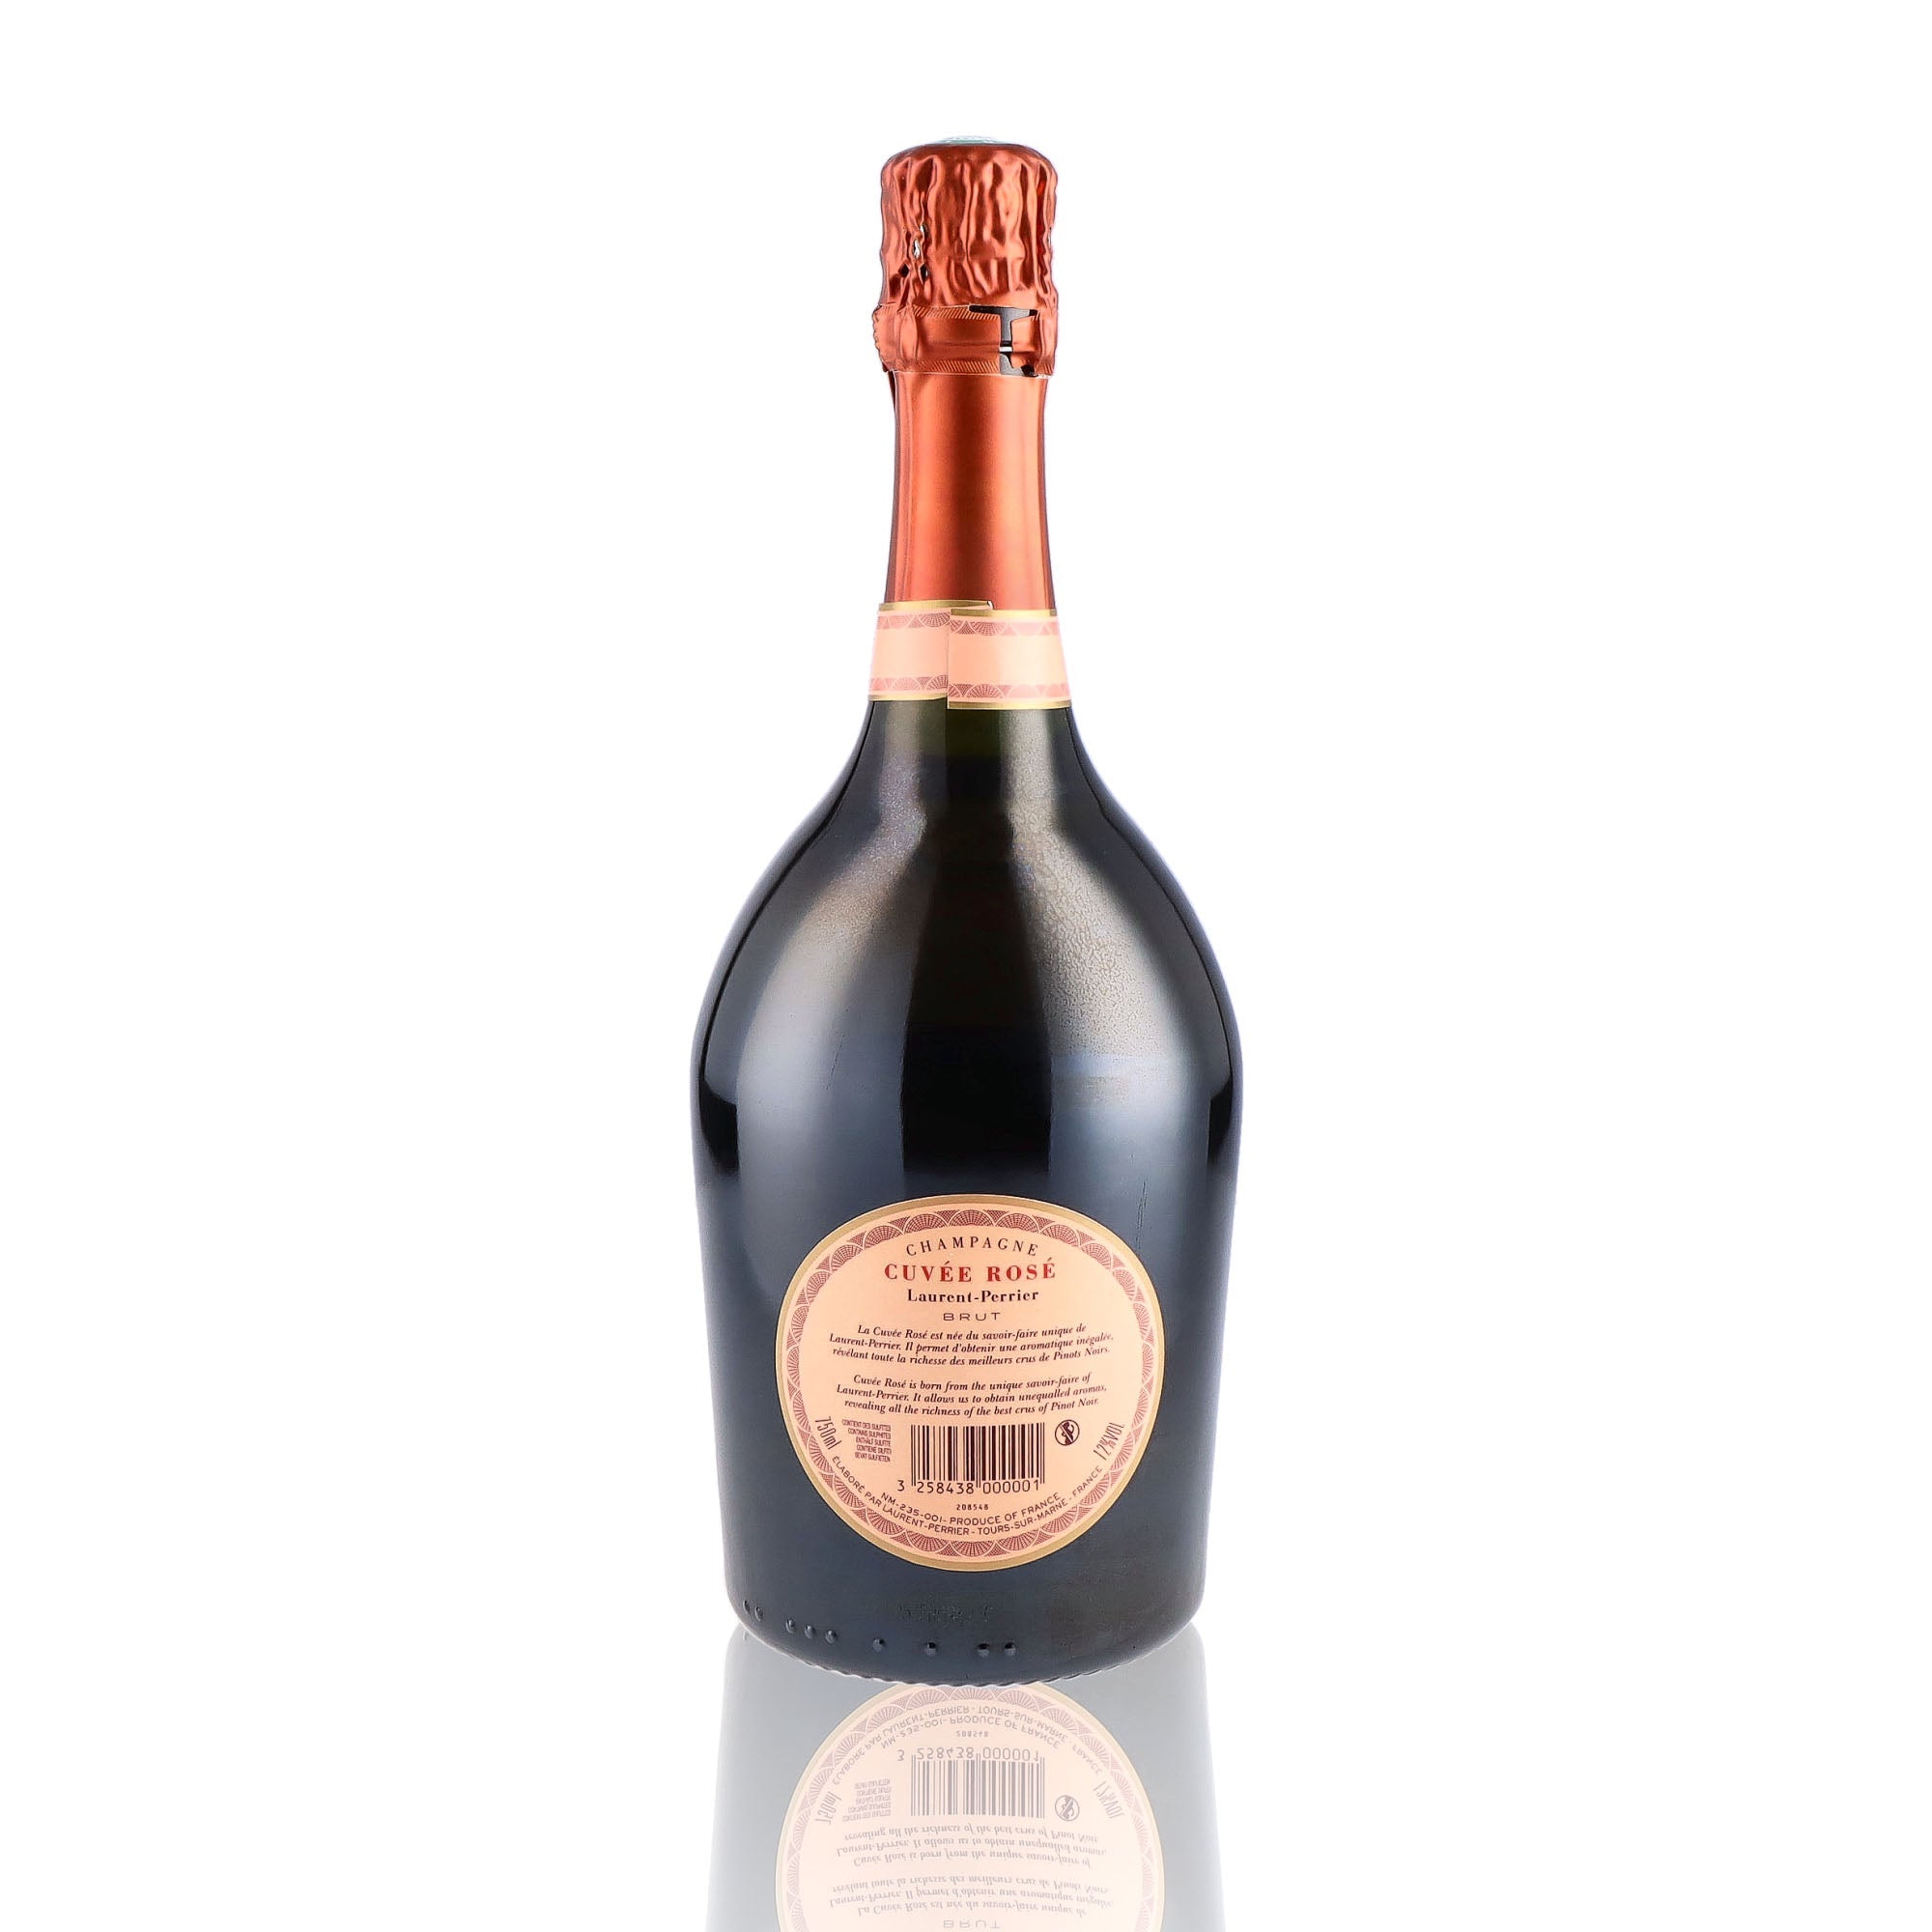 Une bouteille de champagne de la marque Laurent Perrier, de type rosé.